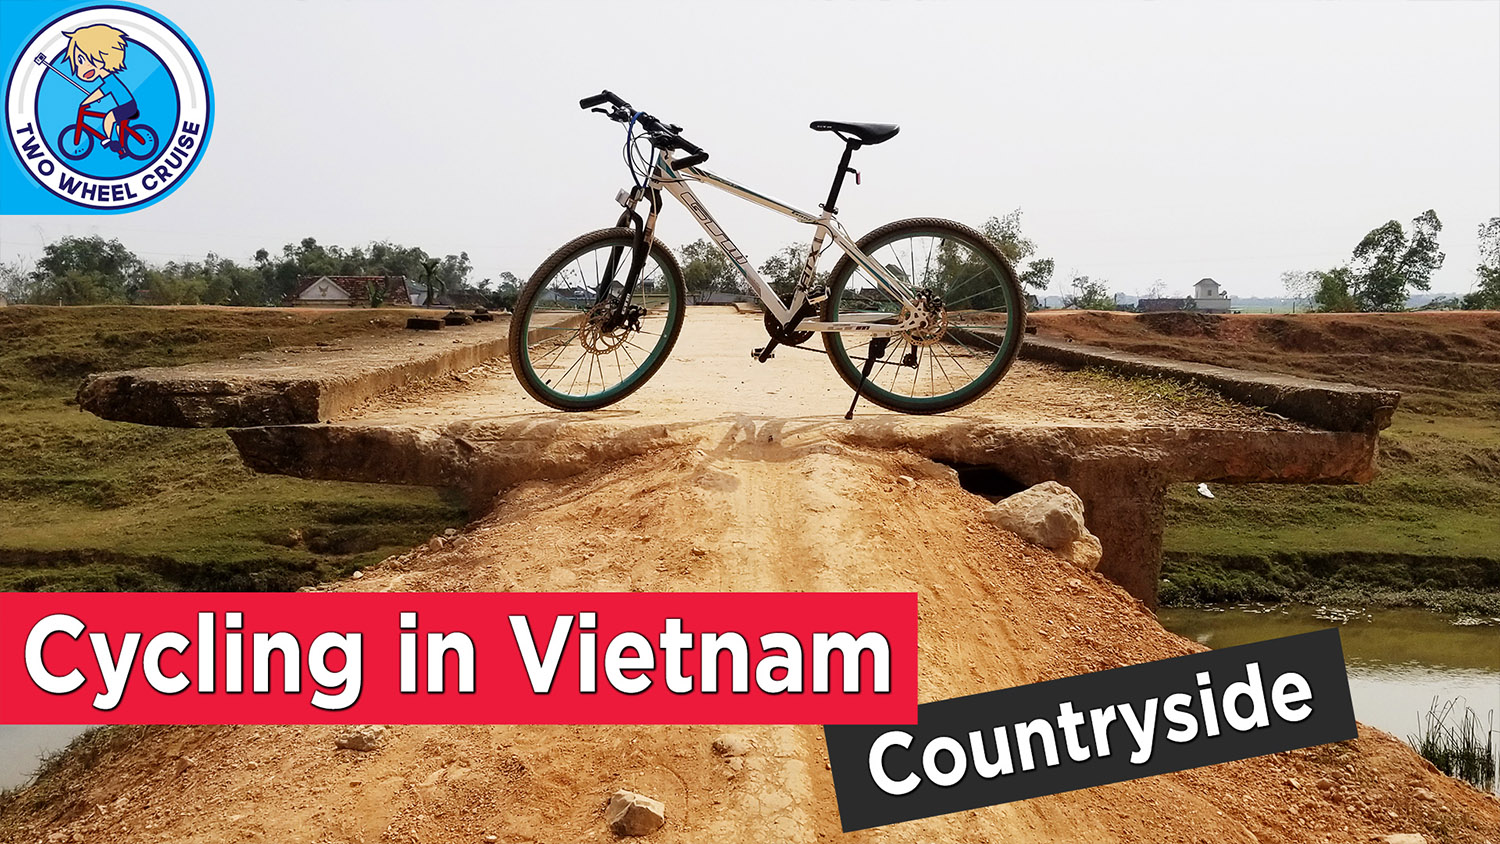 cycling in vietnam countryside mountain bike vlog